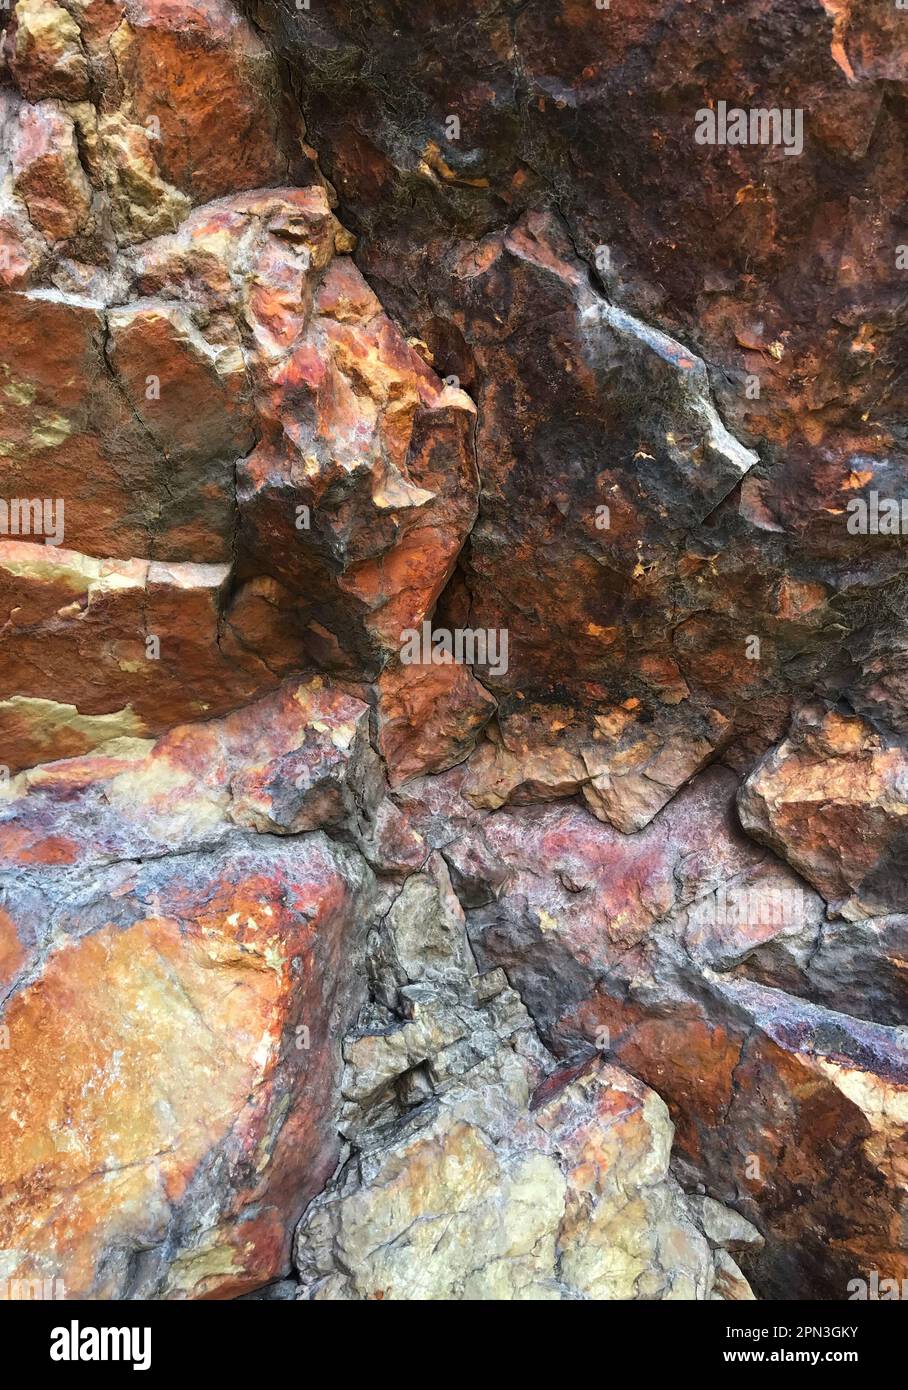 Formazione di rocce ignee estrusive di riolite. I colori provengono dai minerali: Ferro ossidato (arancione/rosso/giallo), magnesio (nero) e silice (bianco) Foto Stock